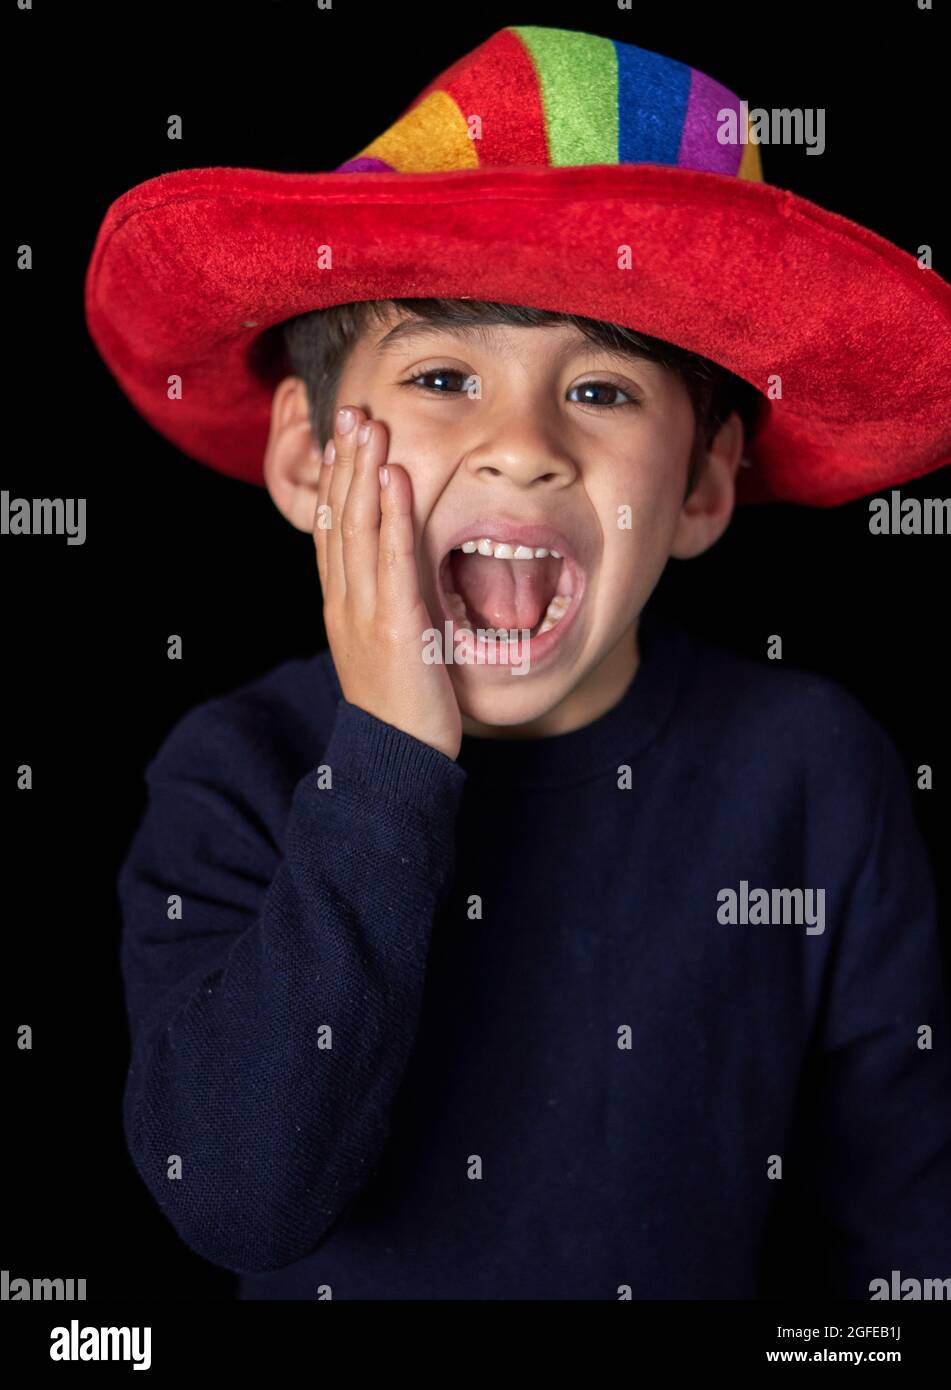 niño latino con sombrero rojo haciendo caras y apoyando su mano en su cara gritando. fondo vertical, negro Foto de stock